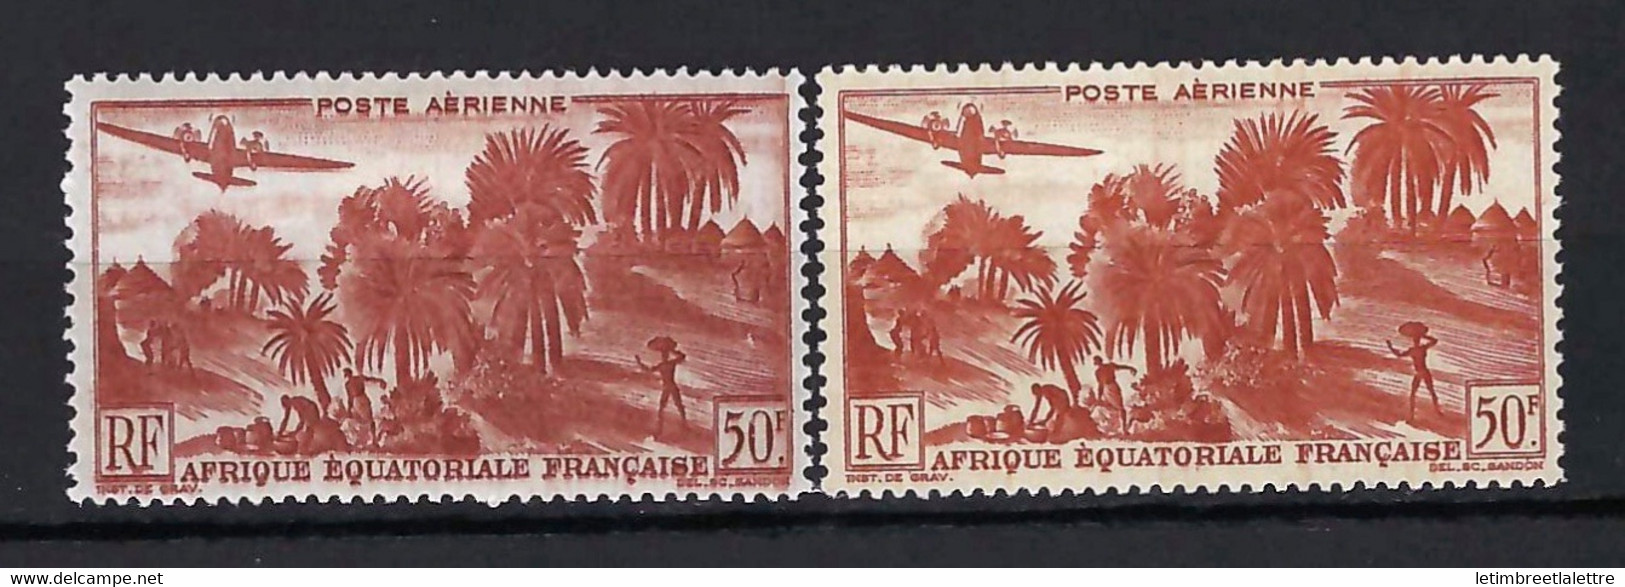 ⭐ AEF - Poste Aérienne - YT N° 50 * - Neuf Avec Charnière - Variété De Couleur - 1947 / 1952 ⭐ - Ungebraucht